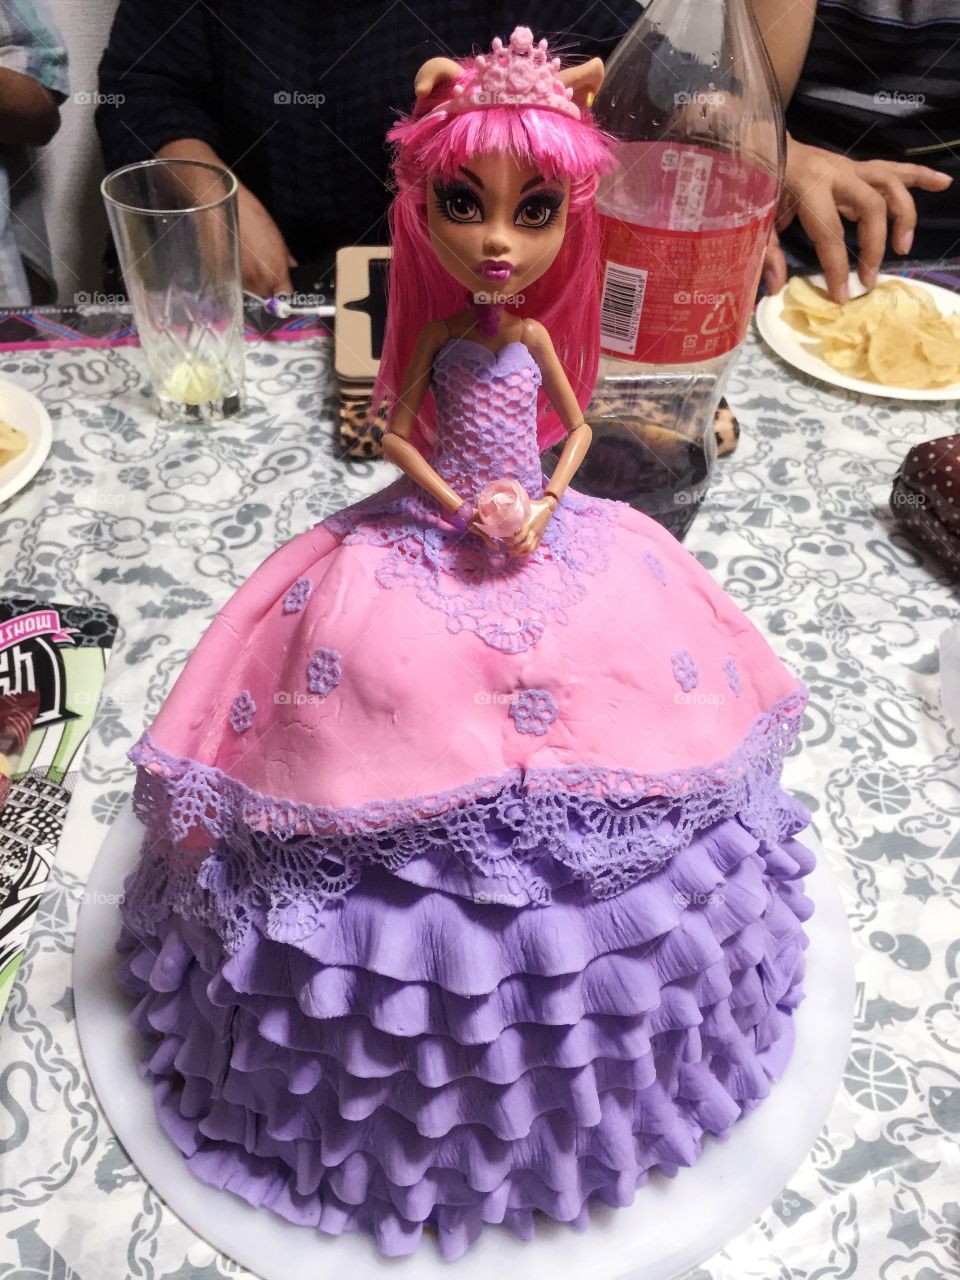 Birthday doll cake